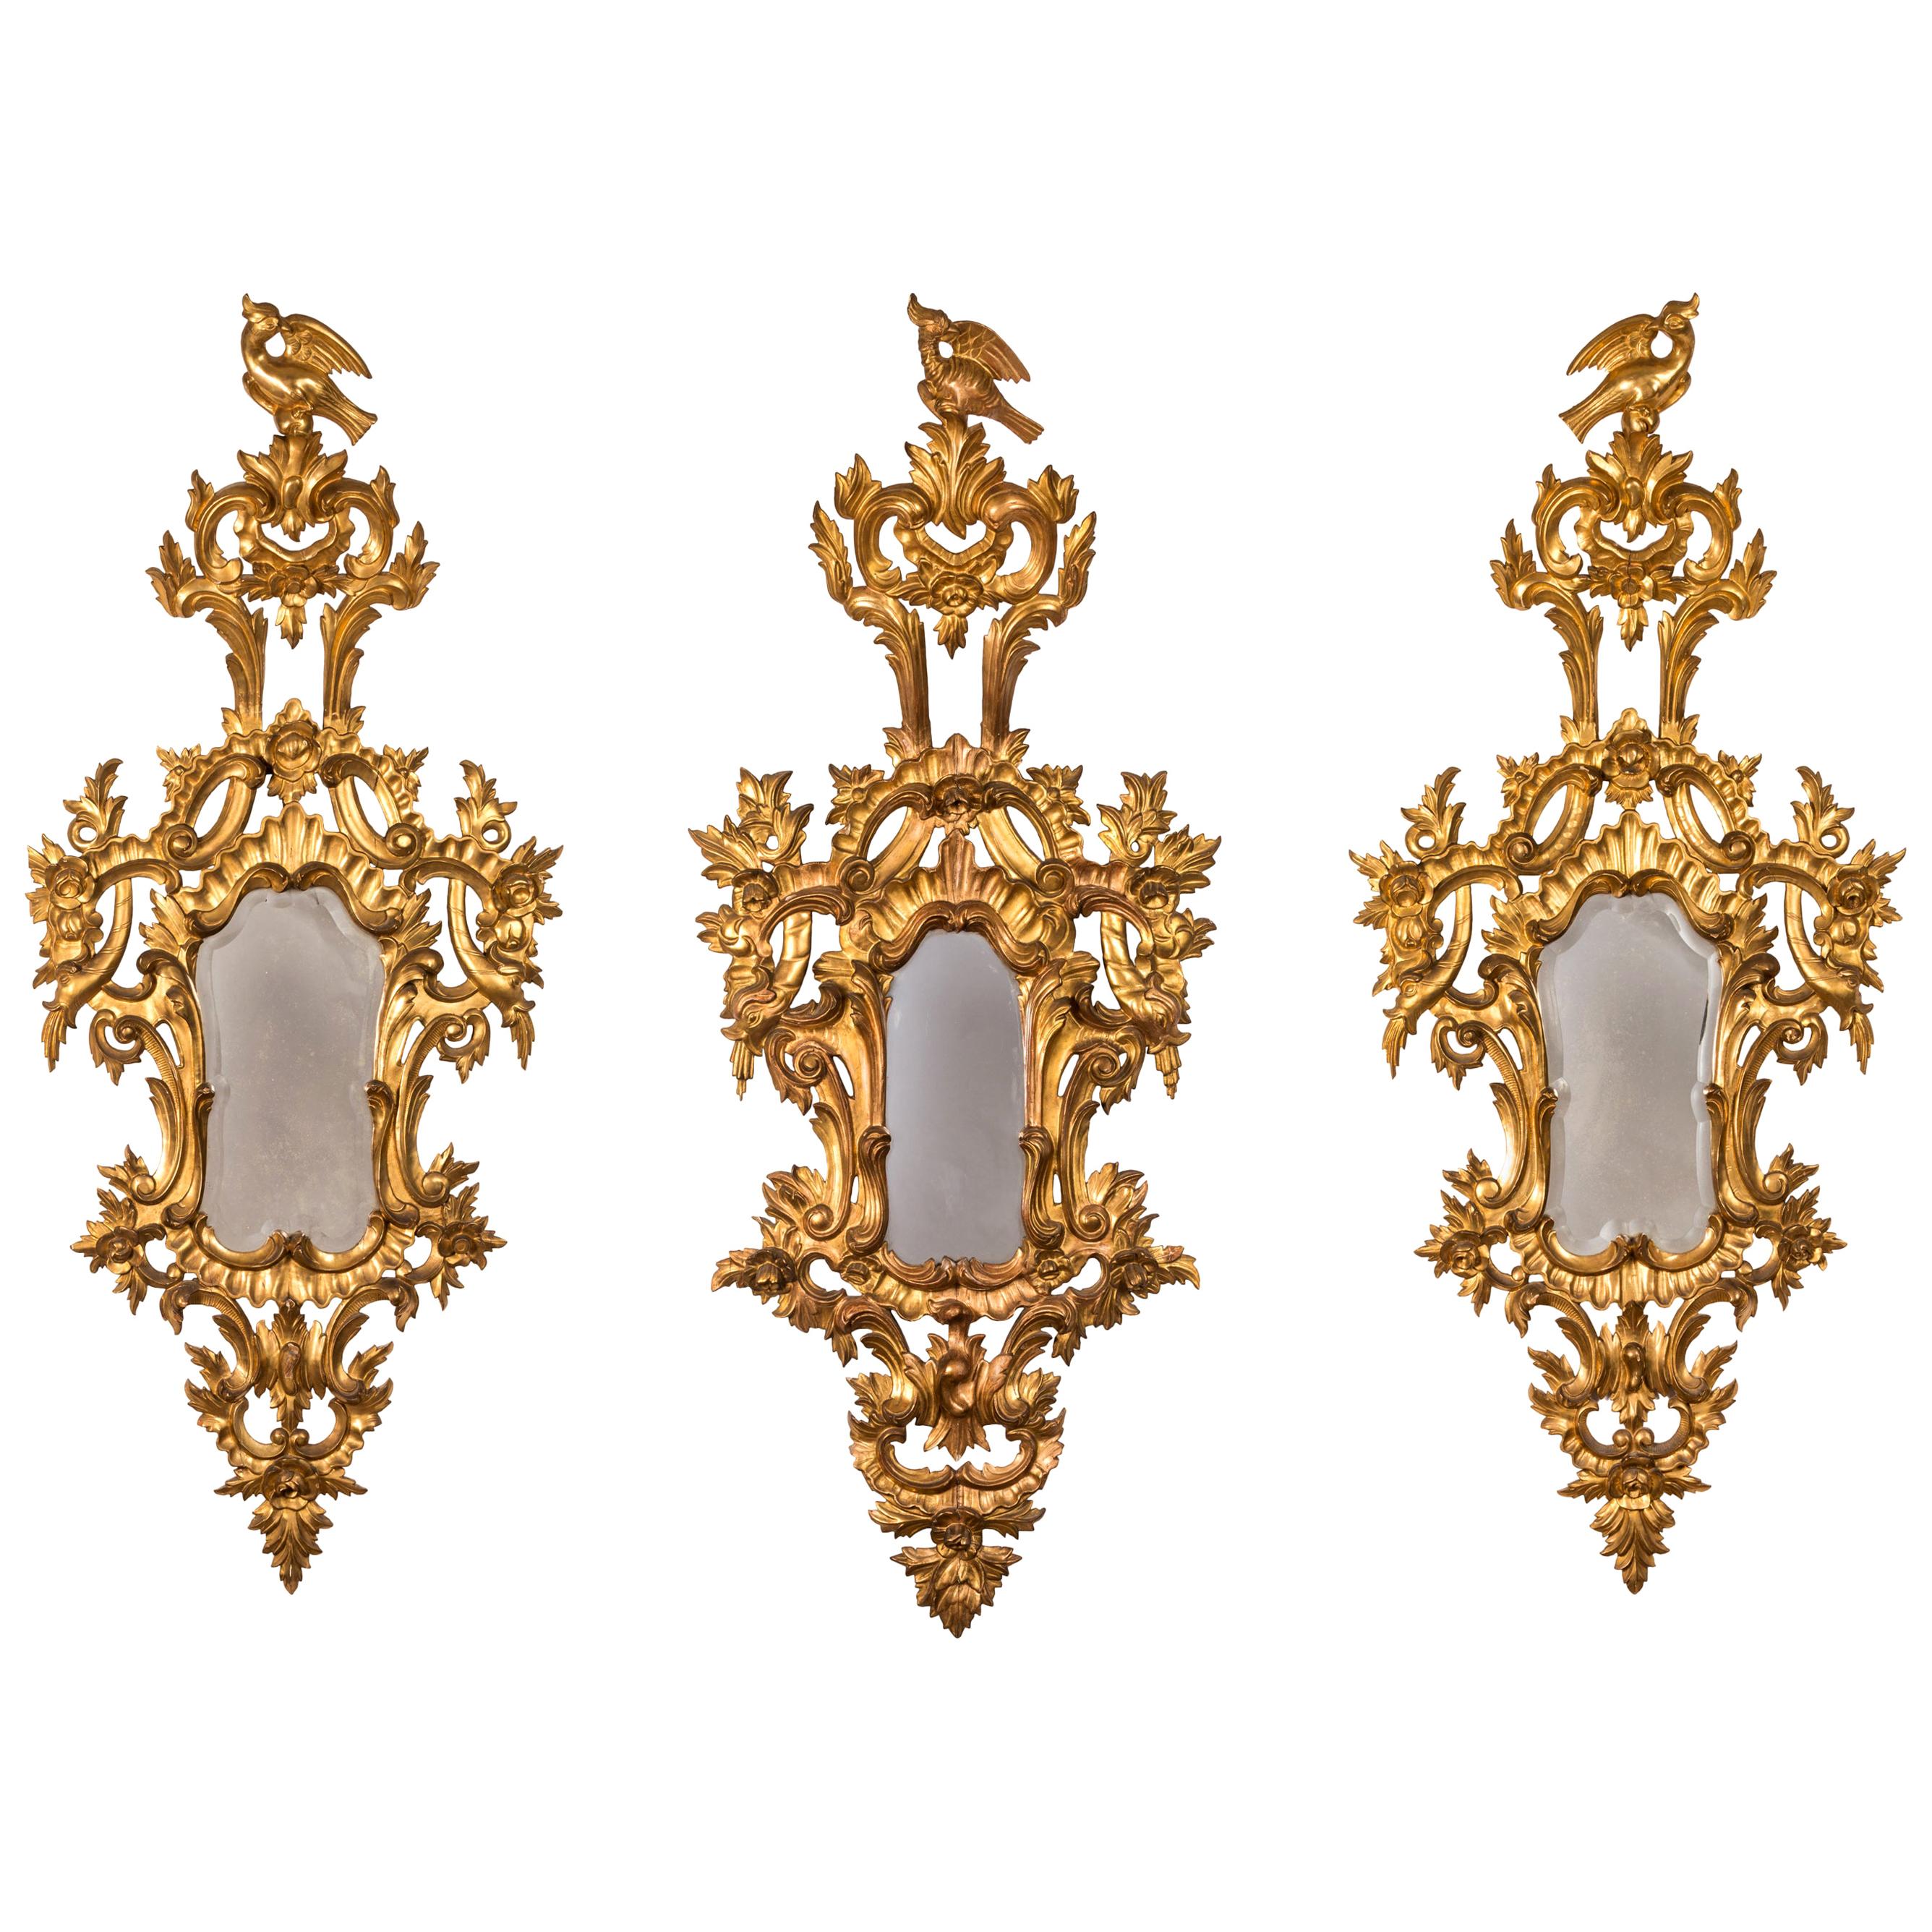 Set von drei französischen Rokoko-Spiegeln aus geschnitztem vergoldetem Holz aus dem 18. Jahrhundert